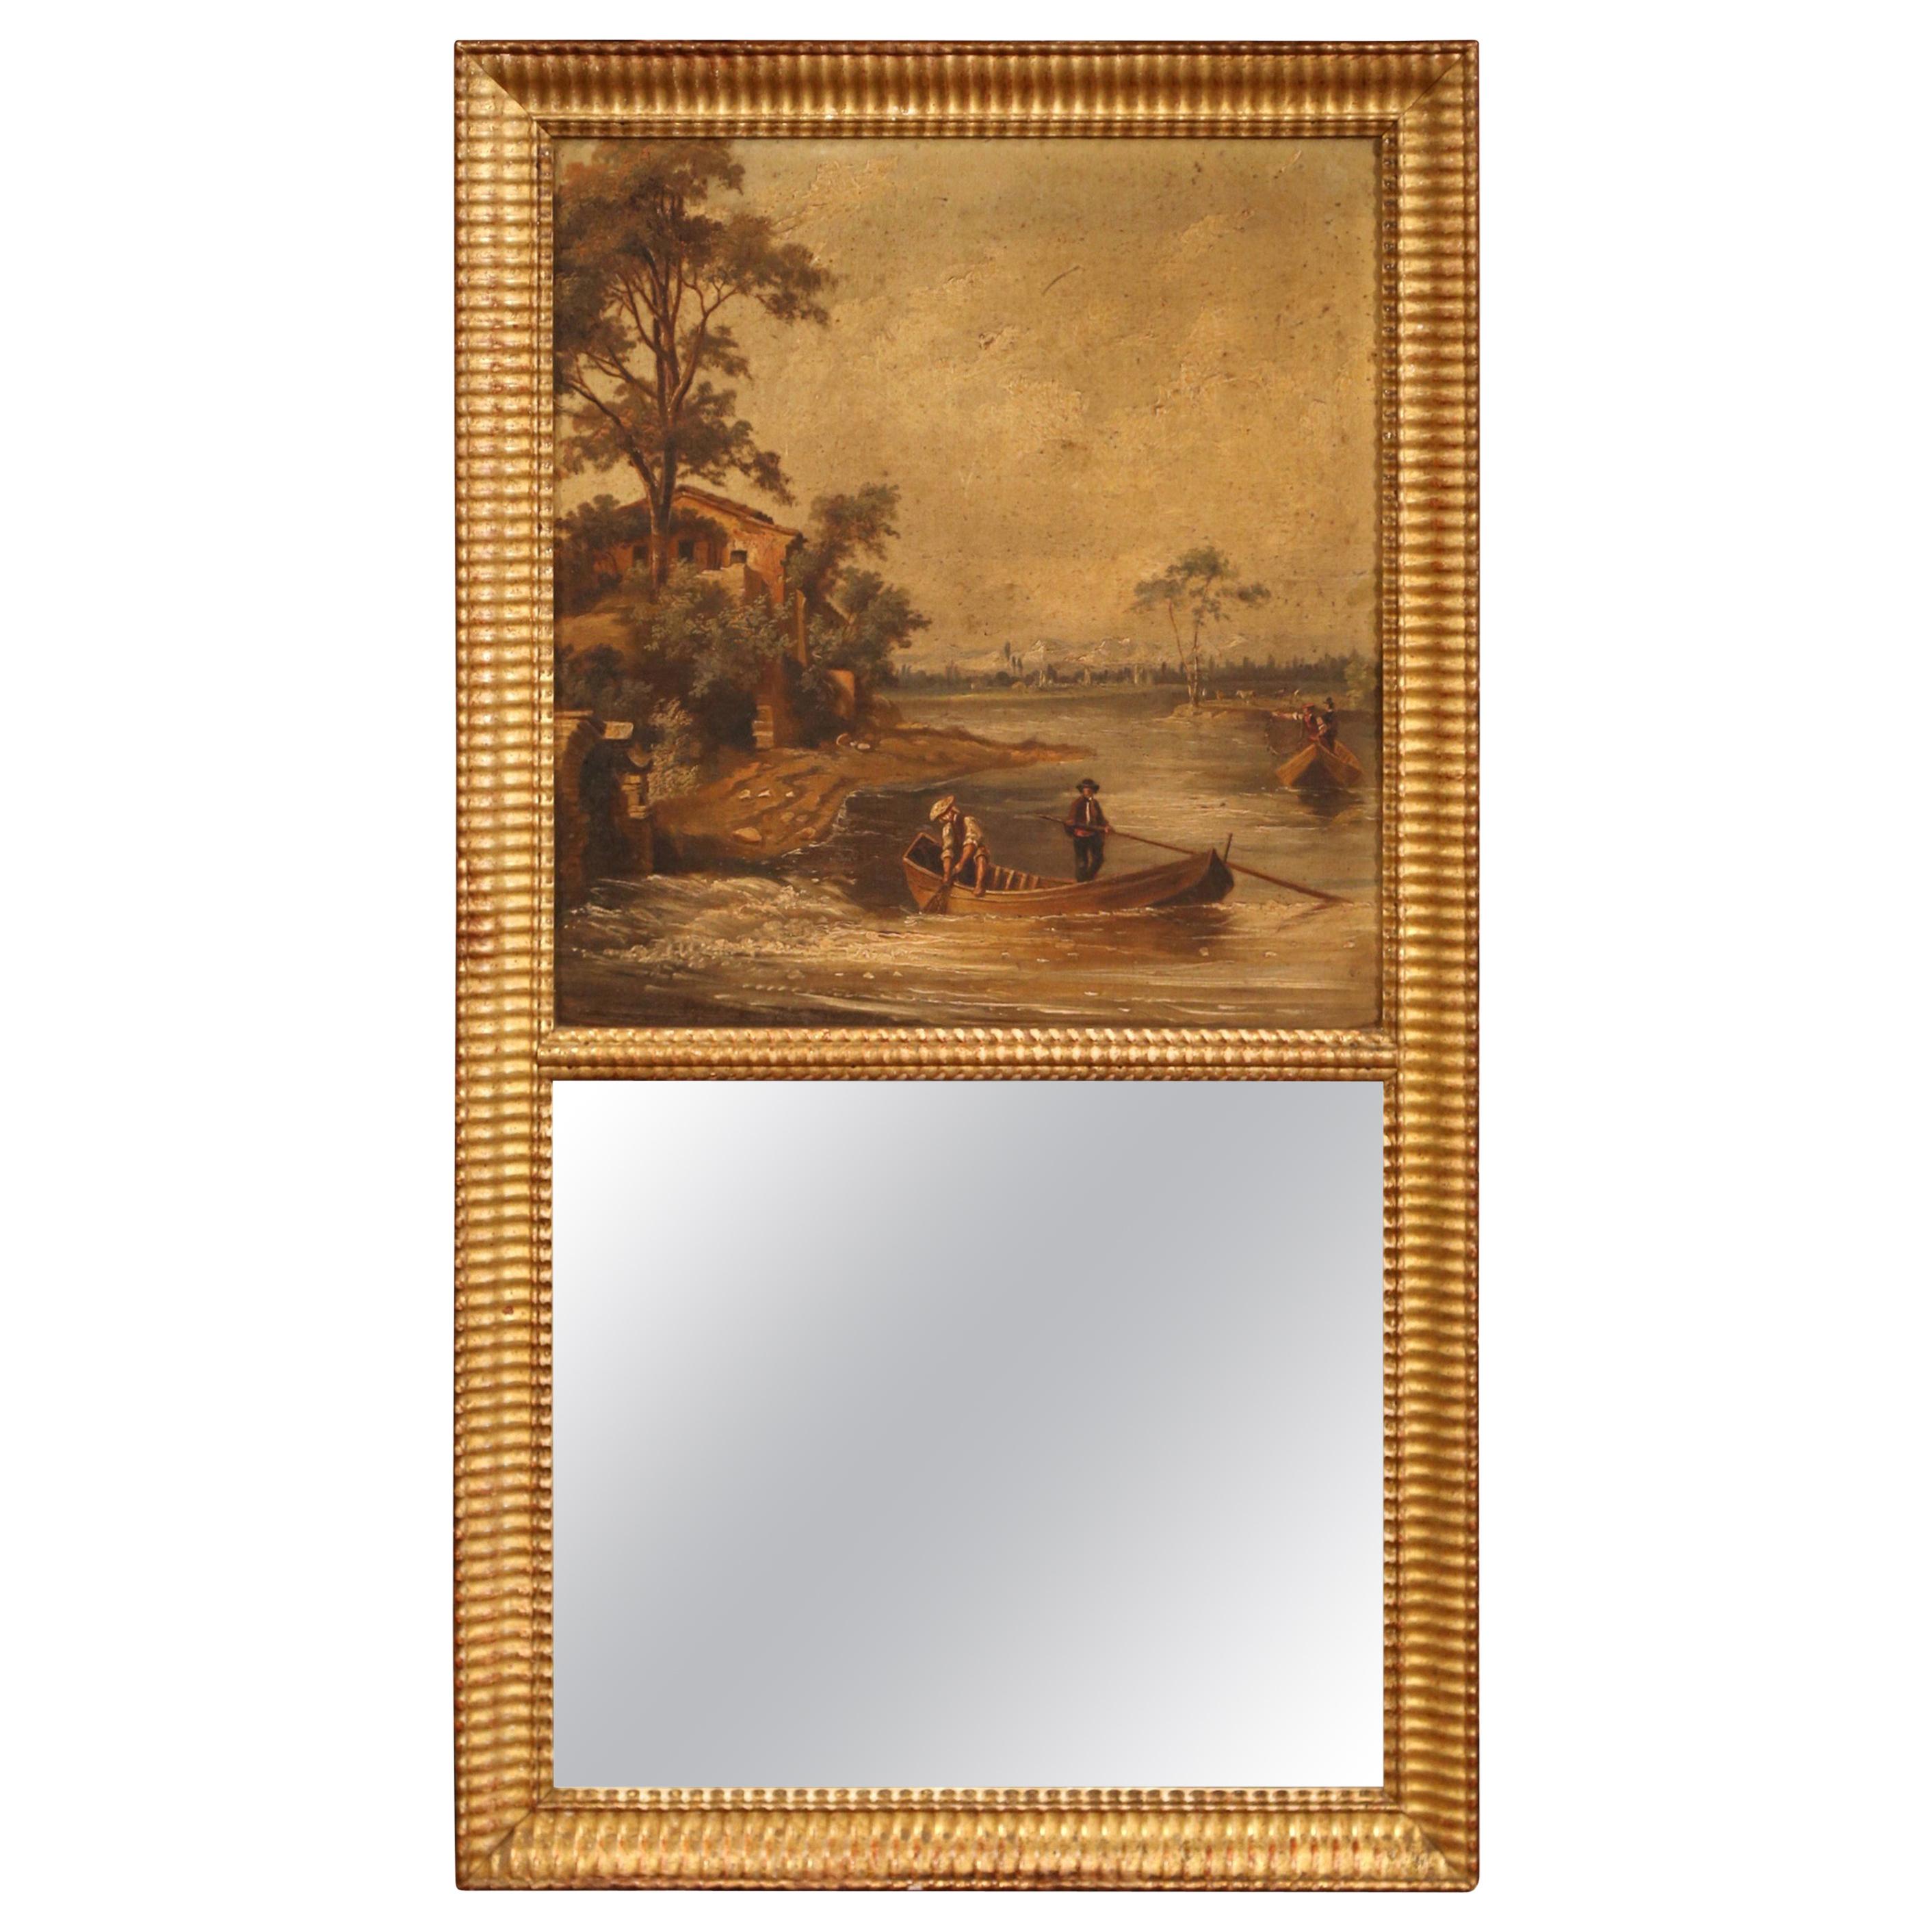 Miroir trumeau français du XIXe siècle peint à la main dans un cadre en bois doré